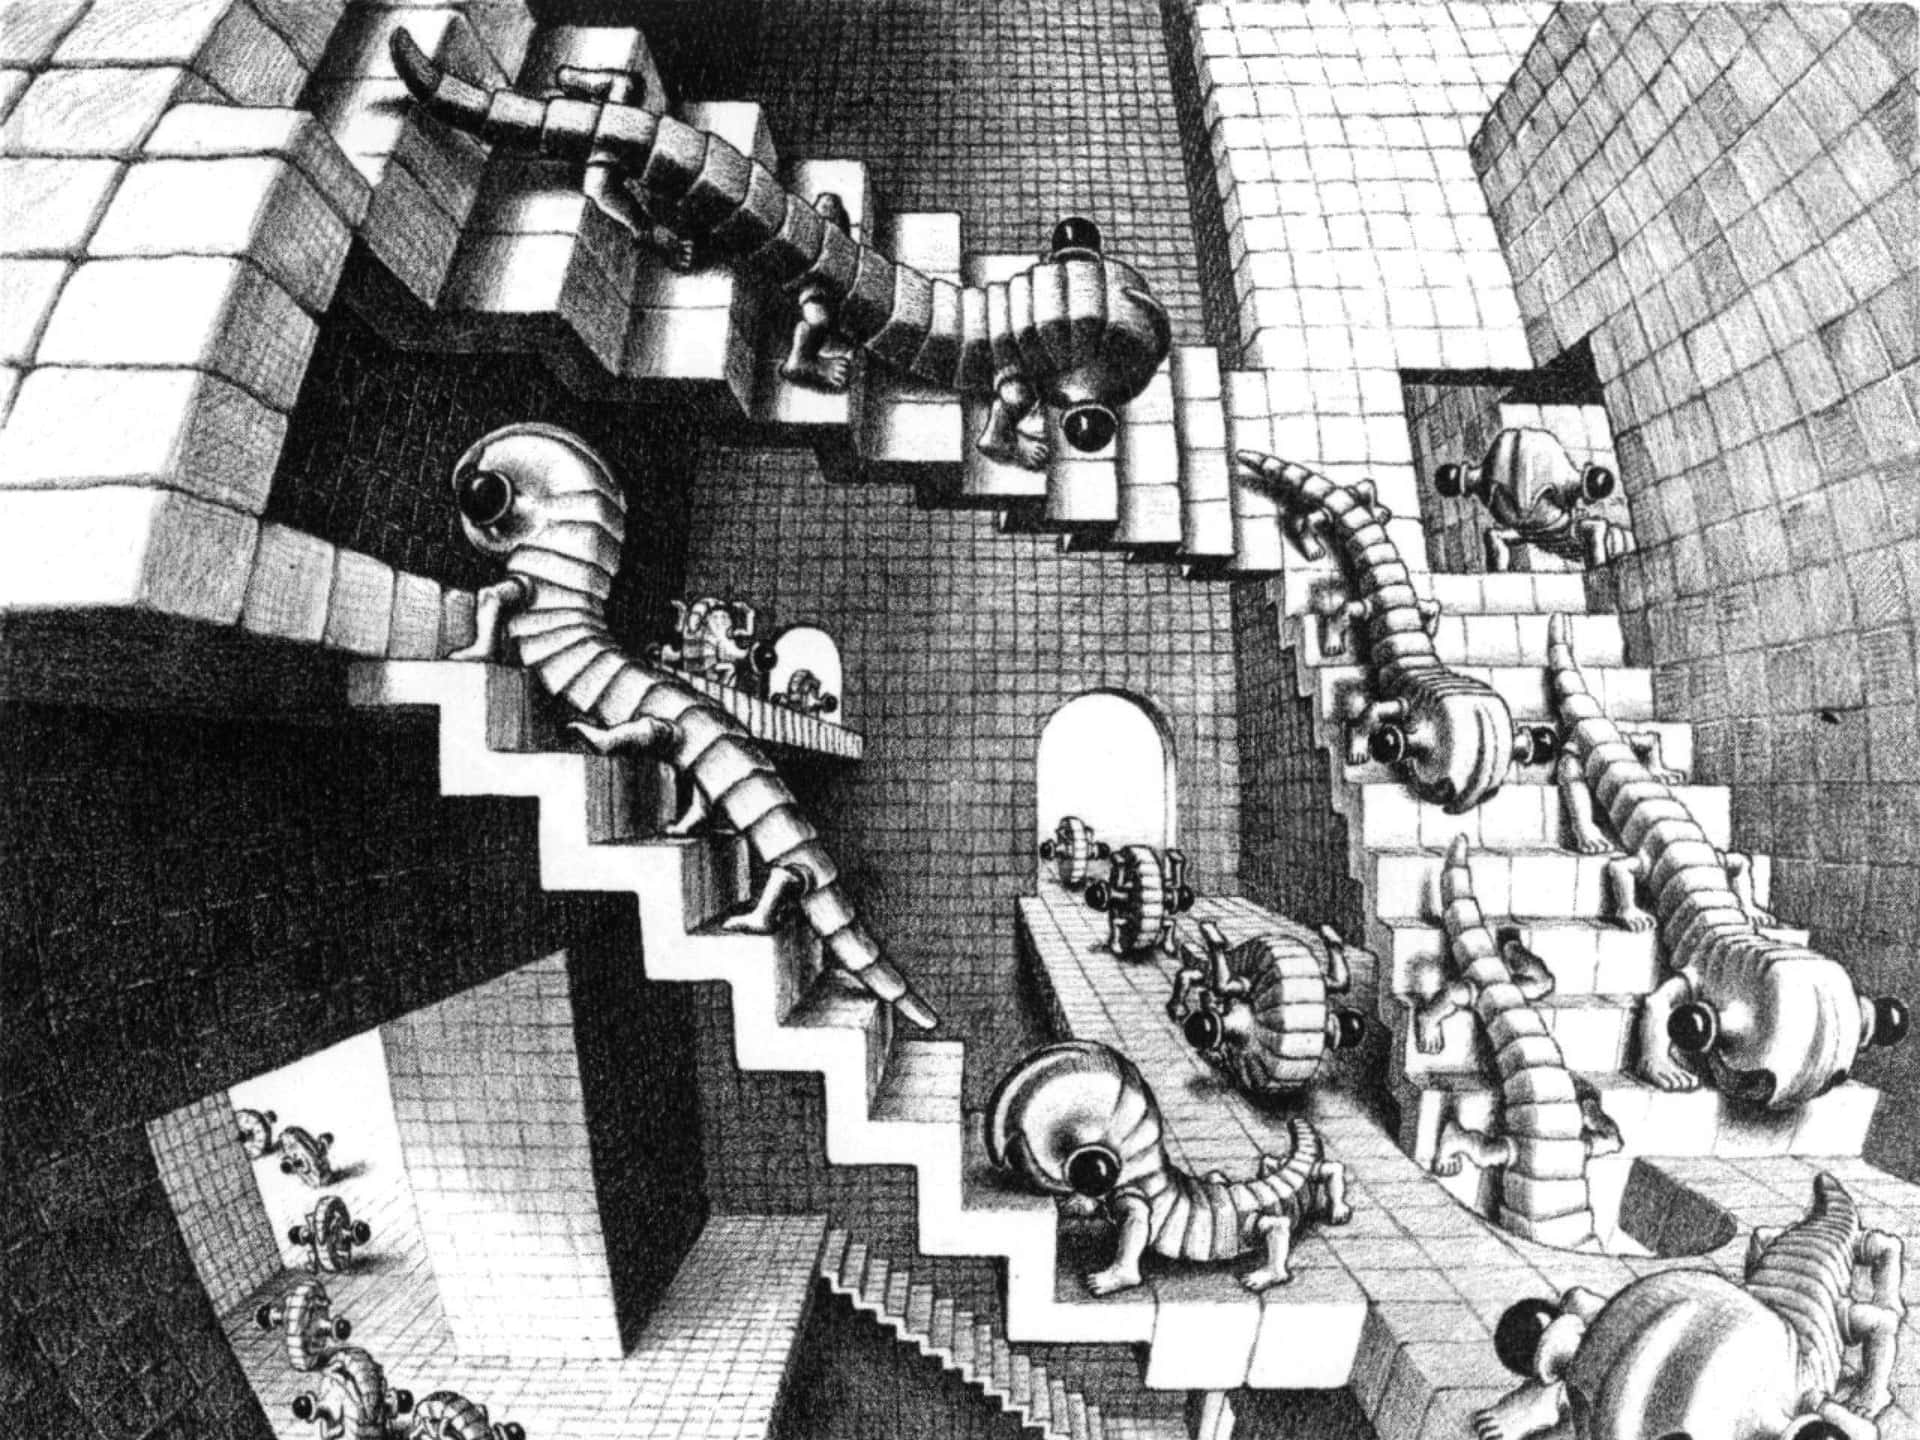 Escher 2560 X 1920 Wallpaper